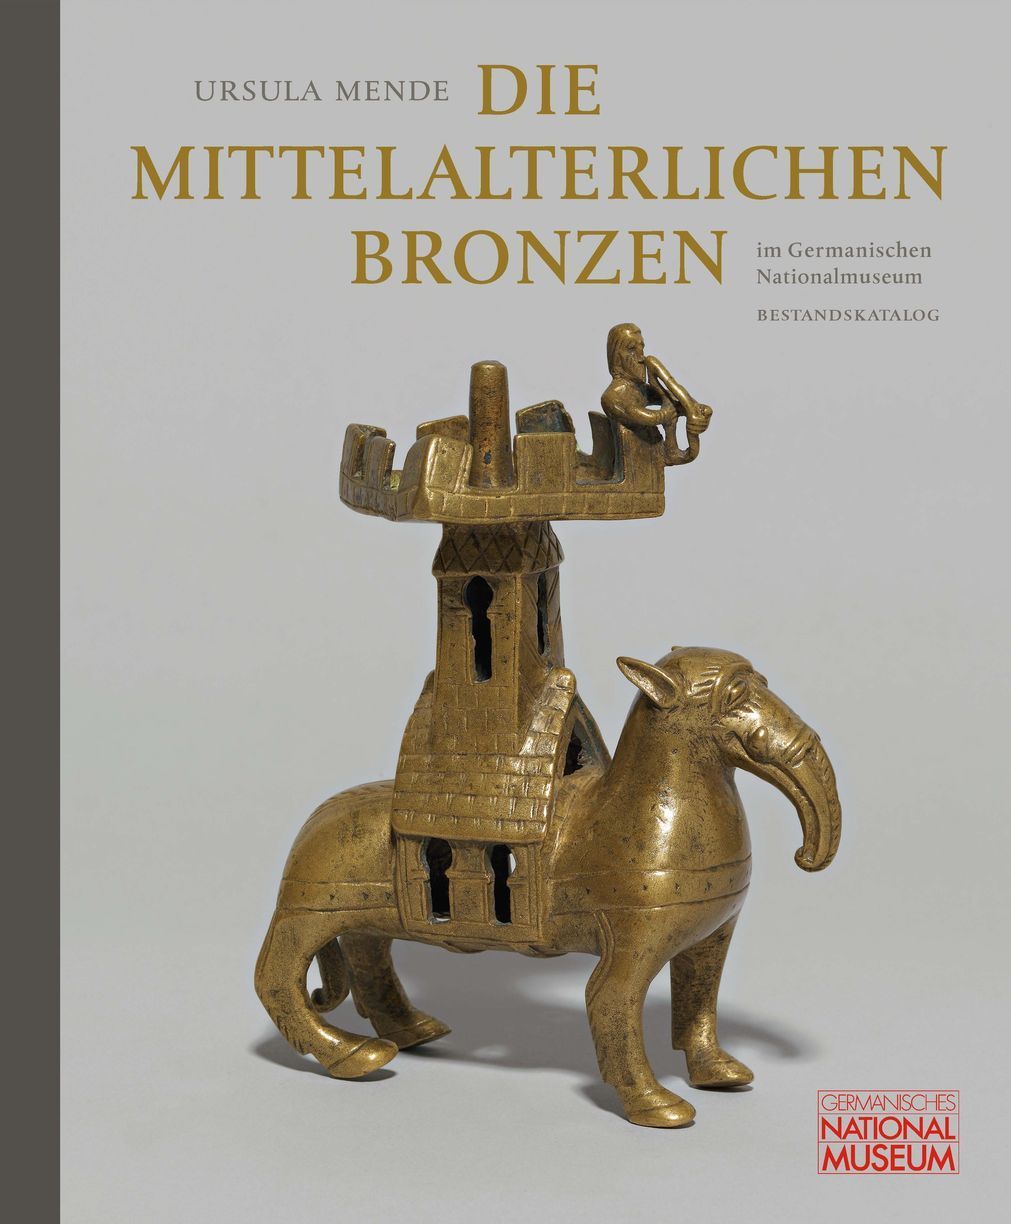 Die mittelalterlichen Bronzen im Germanischen Nationalmuseum